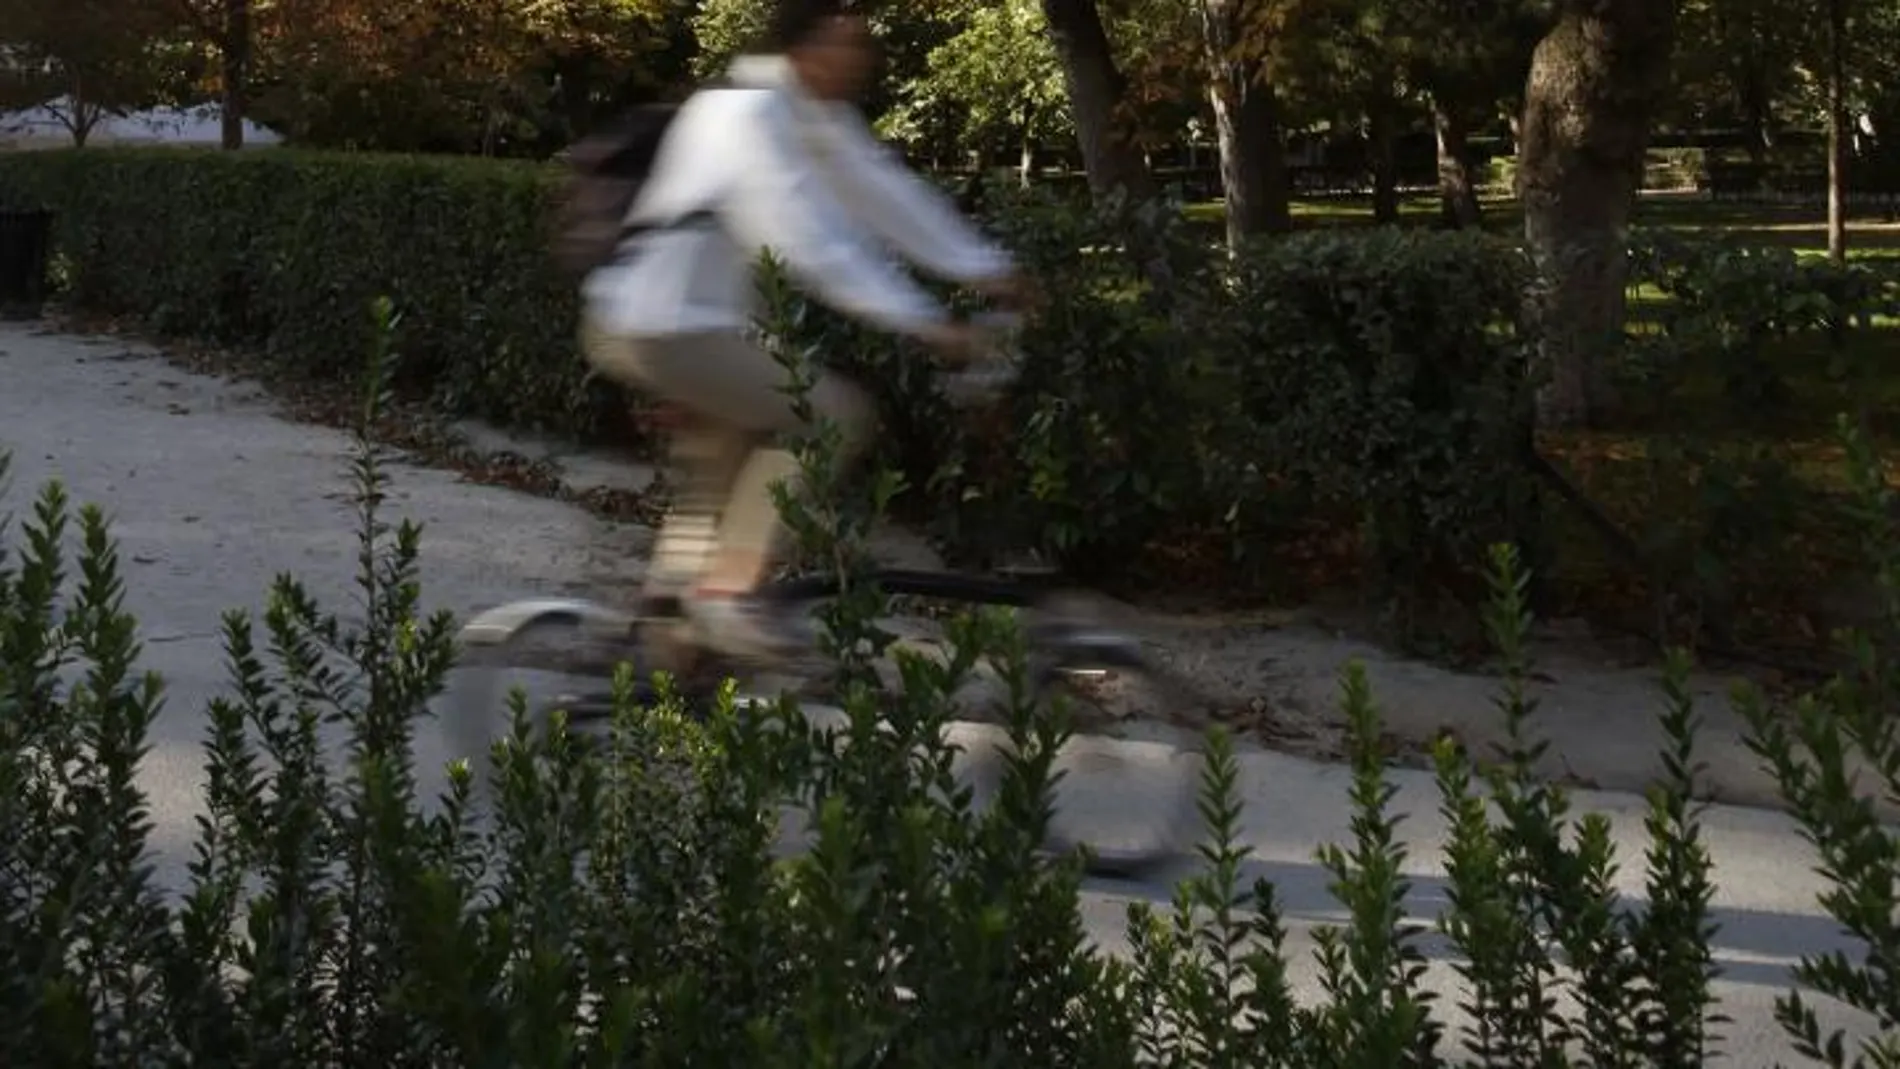 Un ciclista apura las últimas horas del verano en el parque del Retiro (Madrid), antes de que empiece el otoño mañana, 22 de septiembre.